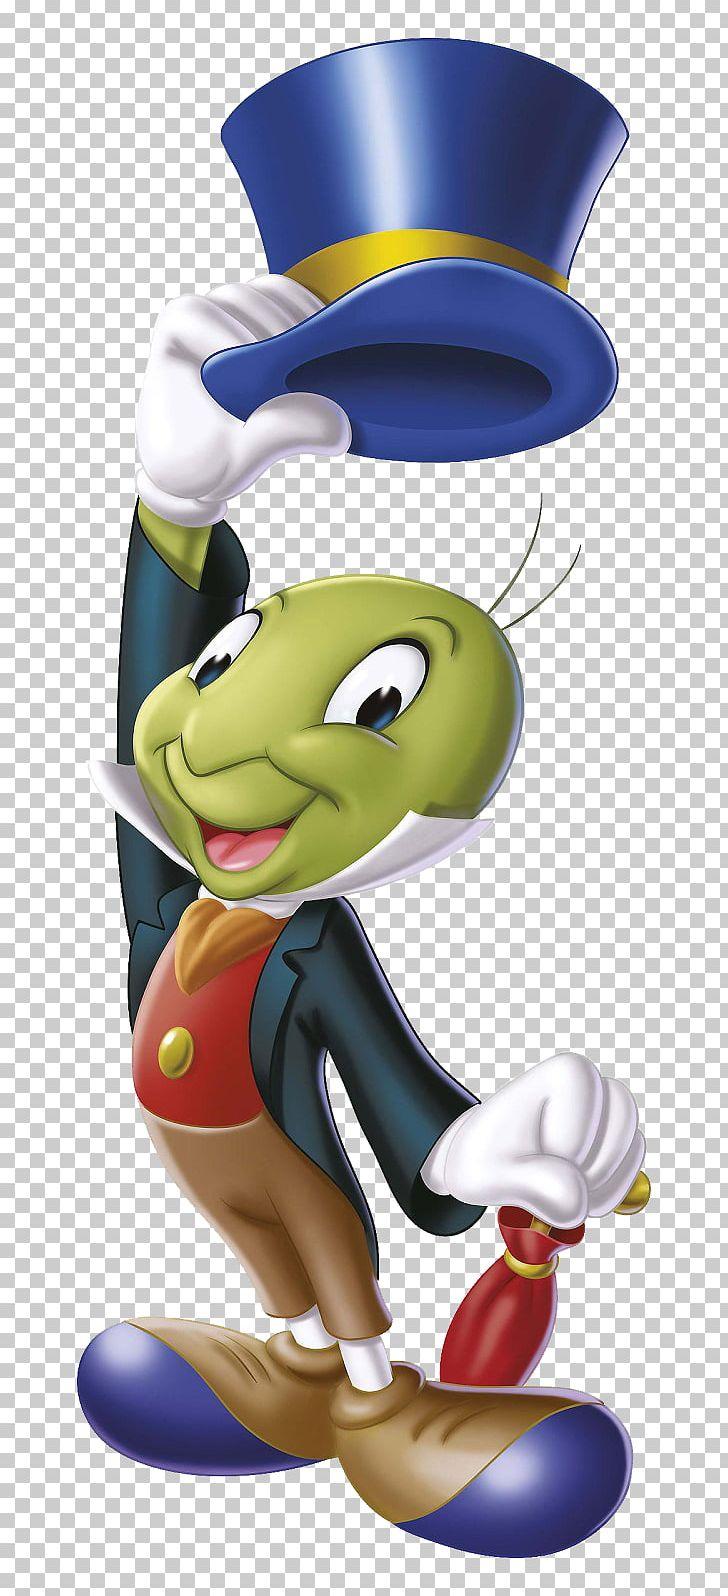 Jiminy Cricket The Talking Crickett The Adventures Of